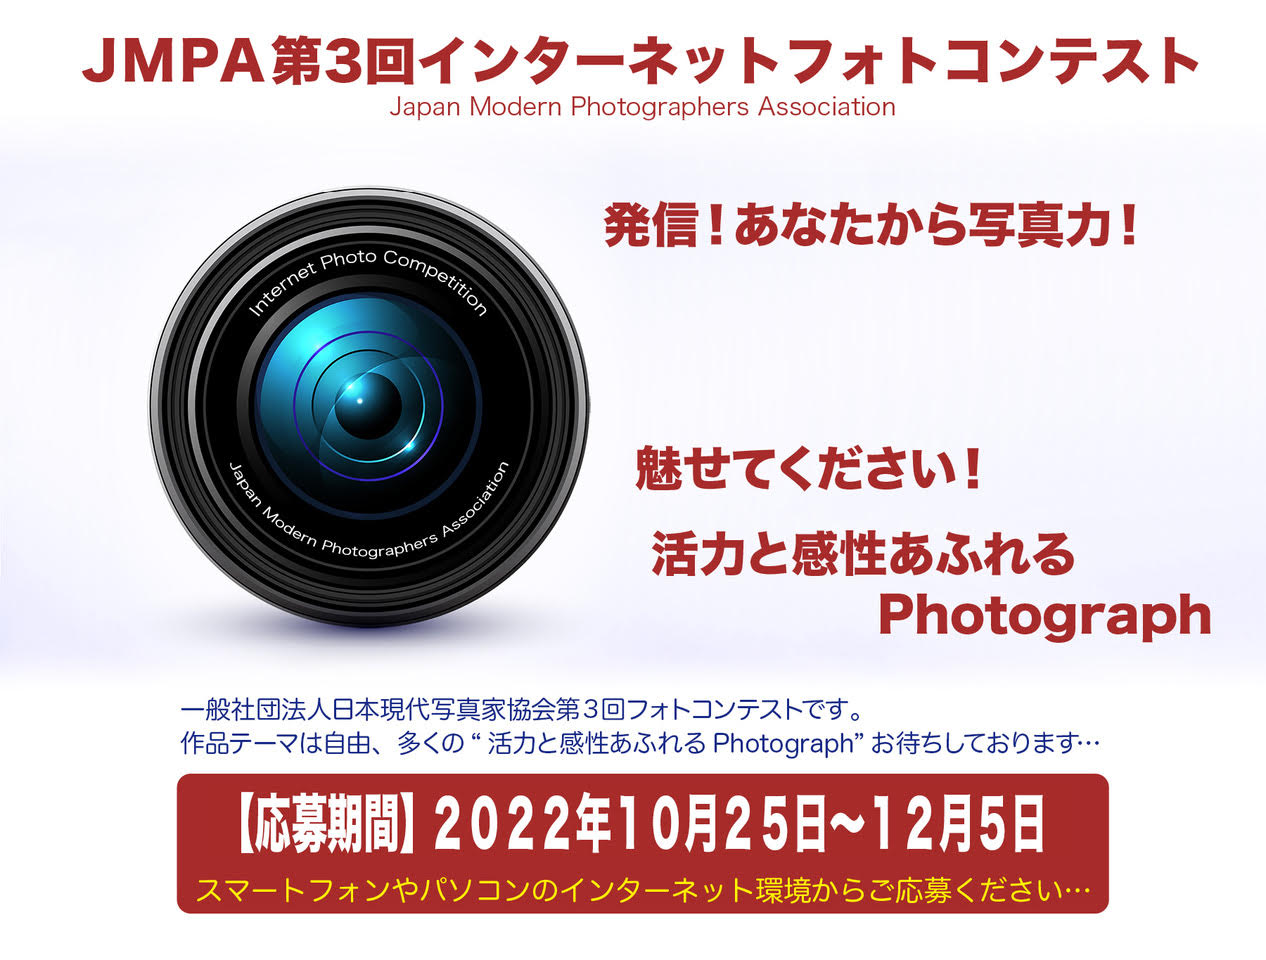 
「JMPA第3回インターネットフォトコンテスト」　Japan Modern Photographers Association　発信！あなたから写真力！魅せてください！活力と感性あふれるPhotograph　一般社団法人日本現代写真家協会設立10周年を迎え、初めてのコンテスト開催です。作品テーマは自由です。多くの「活力あふれるPhotograph」お待ちしております…【応募期間】2021年11月1日～11月30日 スマートフォンやパソコンのインターネット環境からご応募ください…